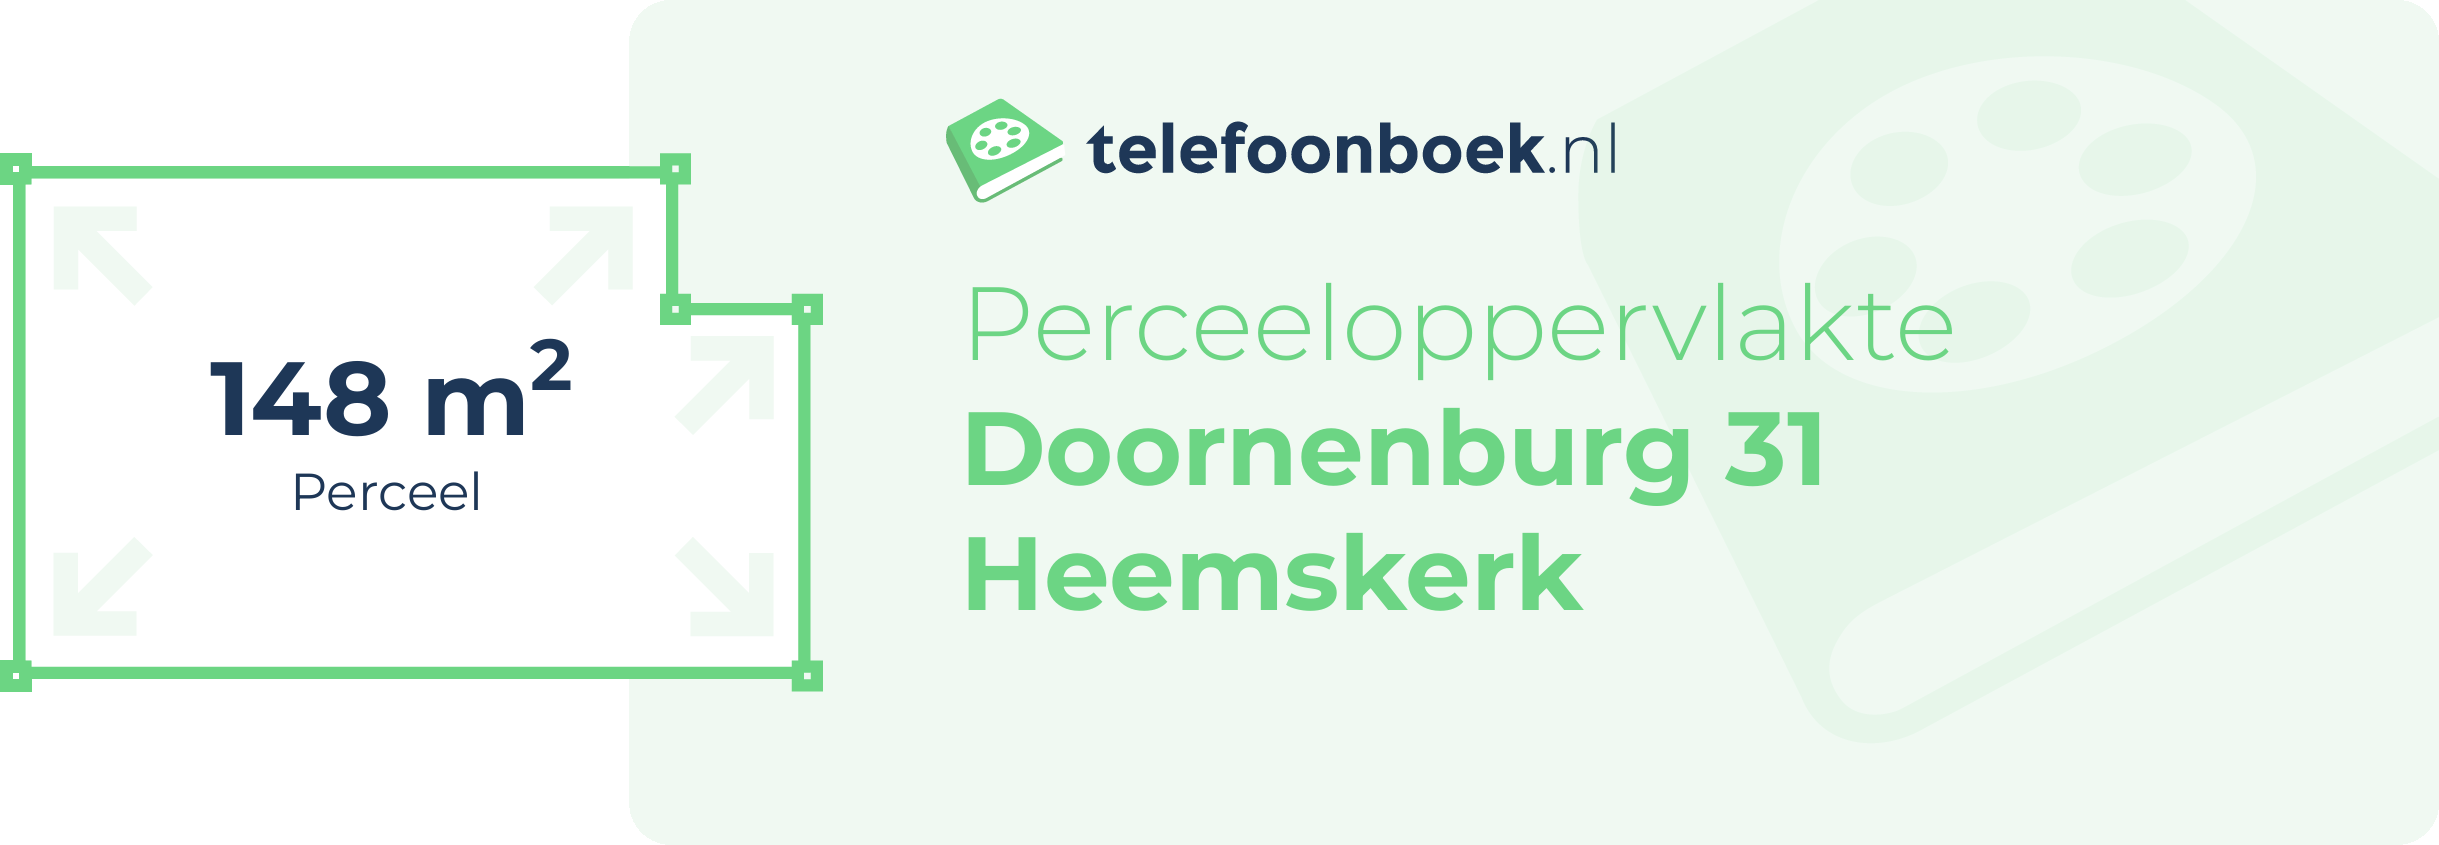 Perceeloppervlakte Doornenburg 31 Heemskerk